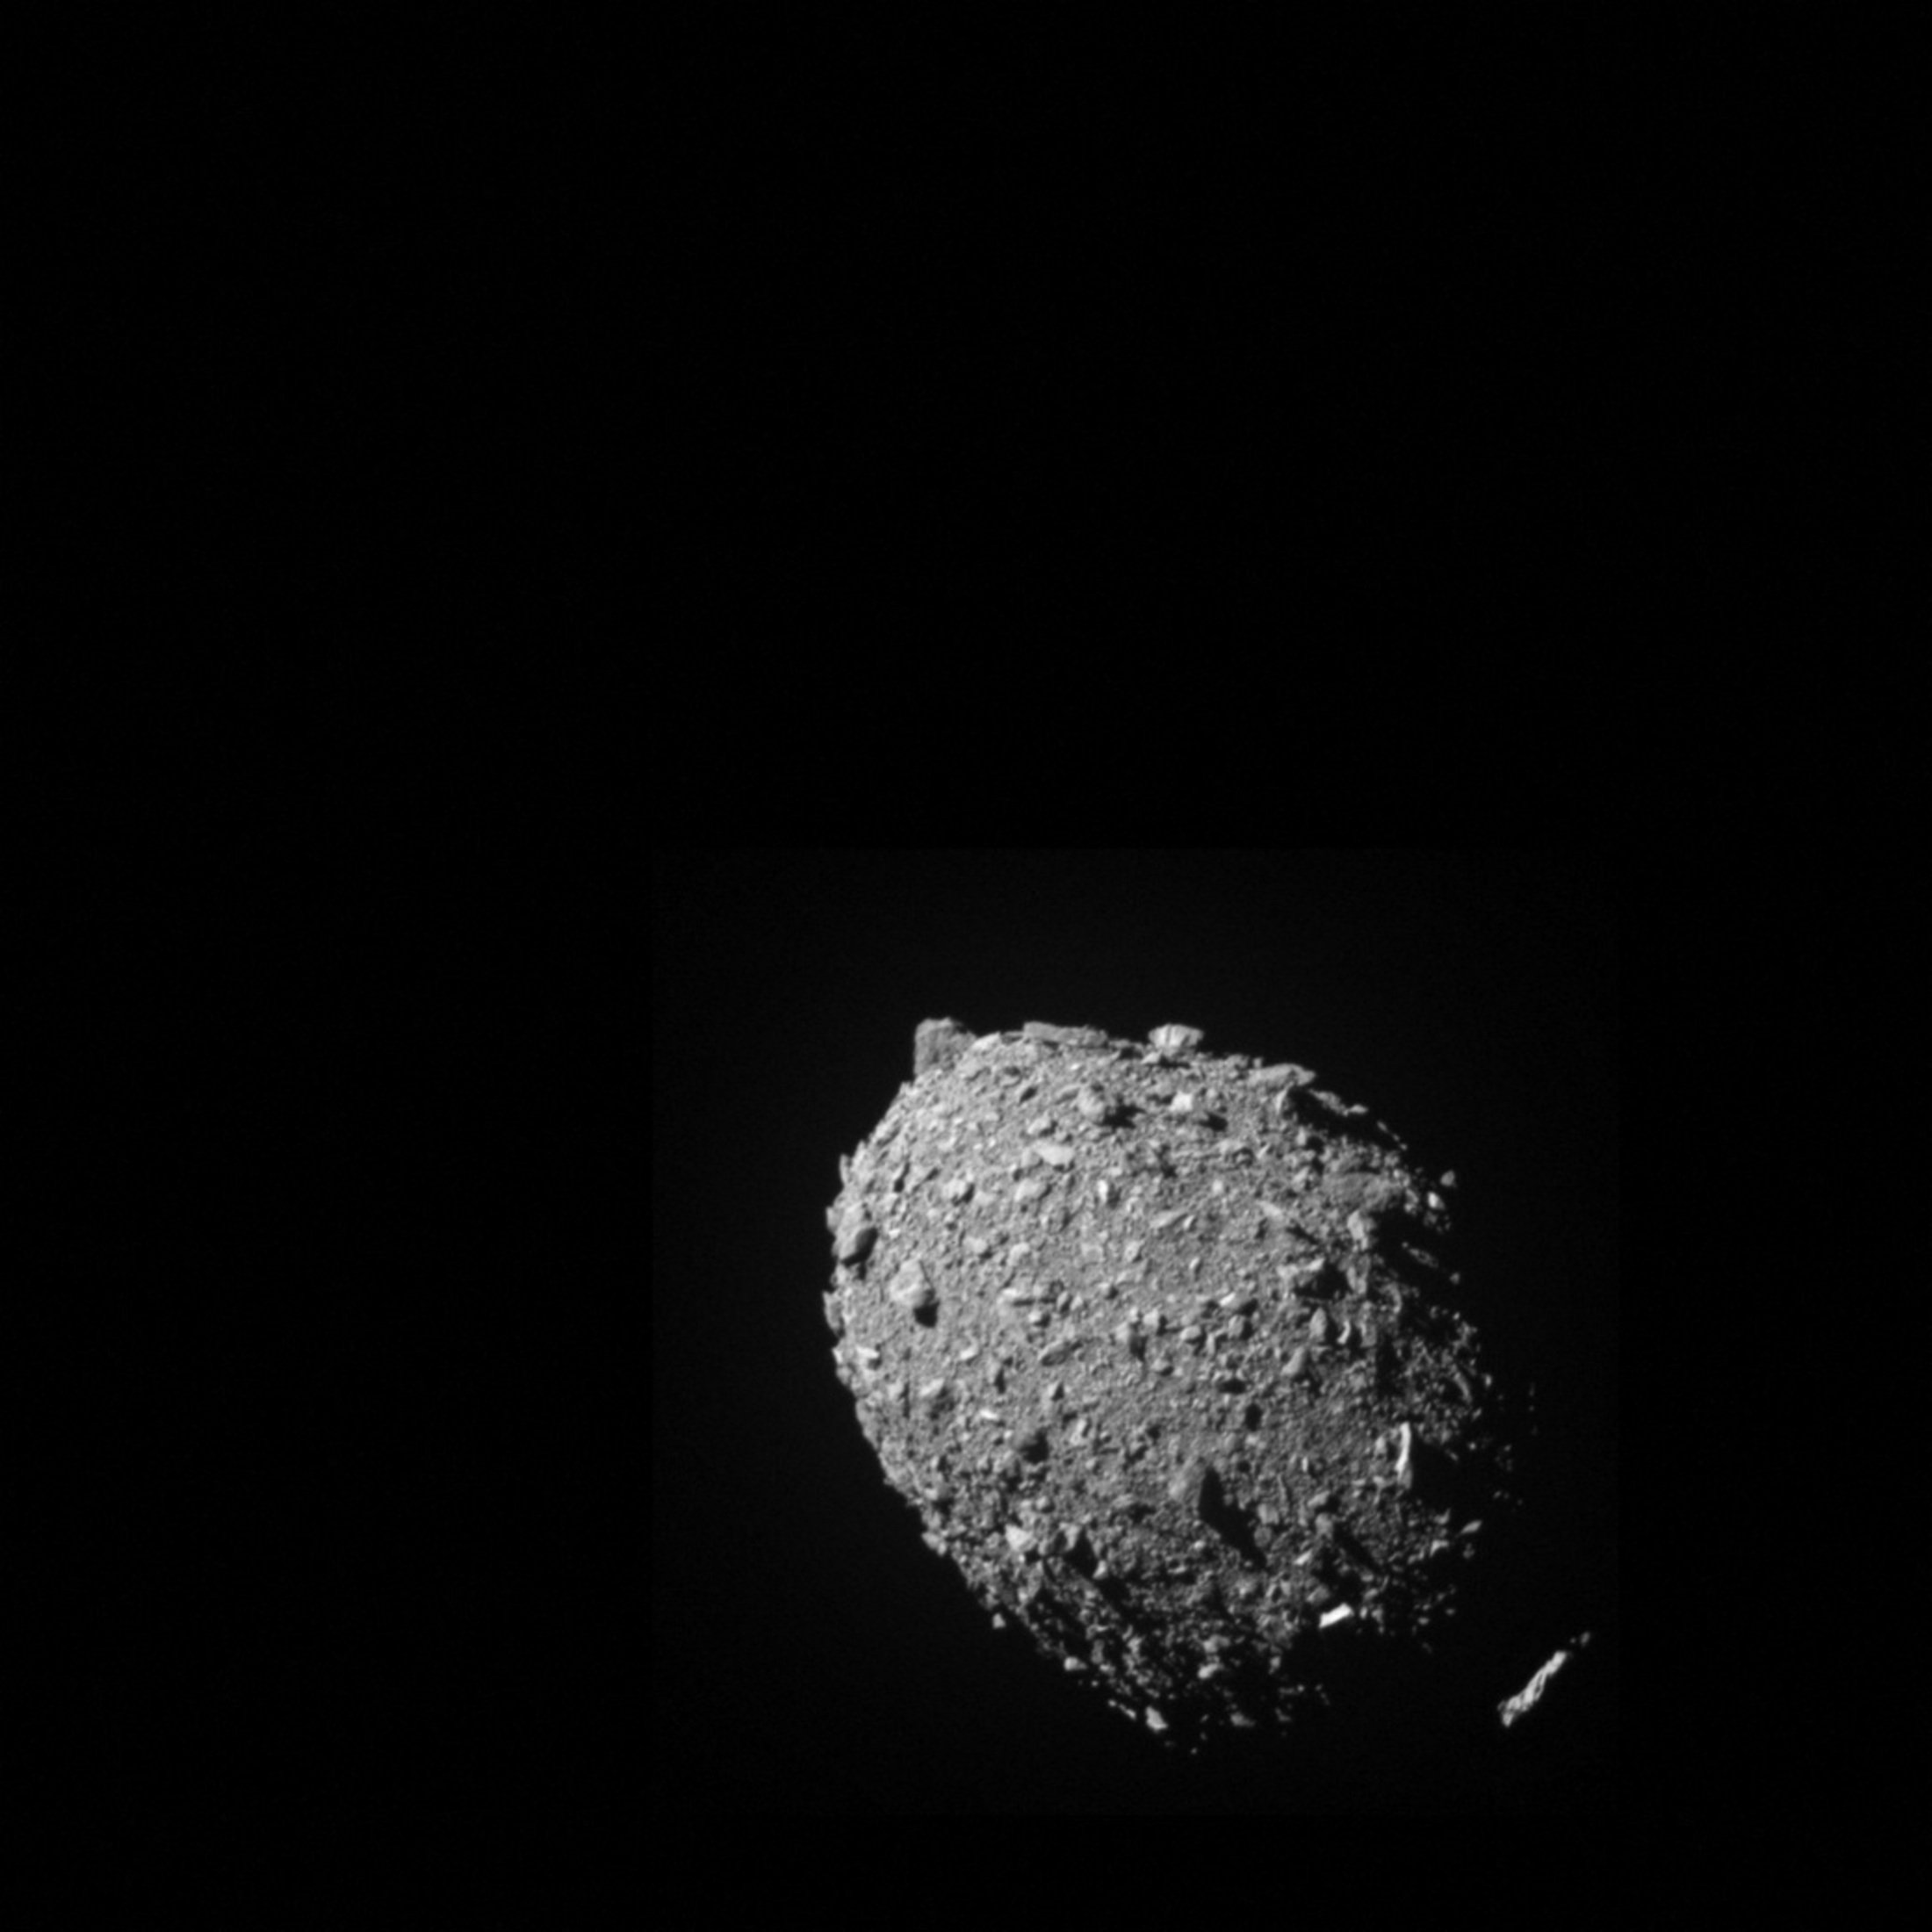 Asteroid moonlet Dimorphos seperti yang terlihat oleh pesawat ruang angkasa DART 11 detik sebelum tumbukan, 26 September 2022. (Foto Reuters)